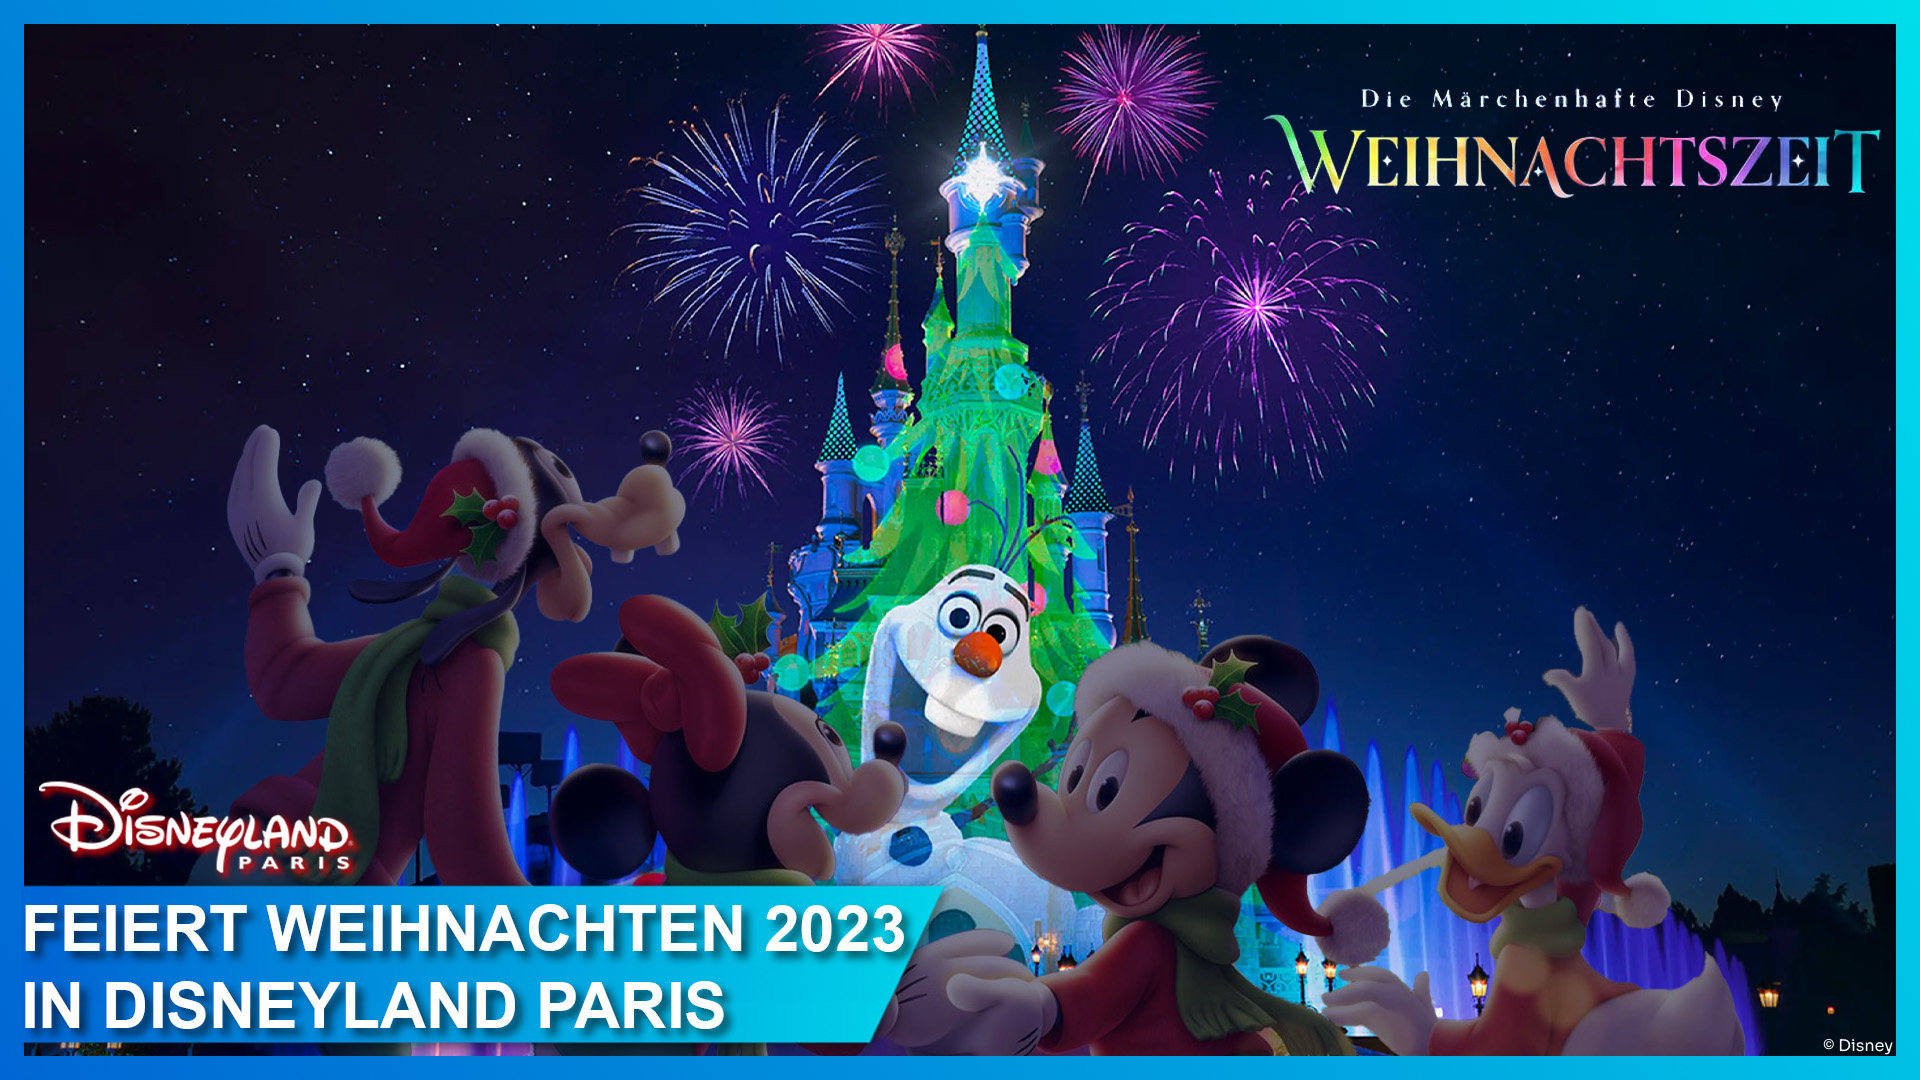 Die Weihnachtssaison vom 11. November 2023, den kompletten Dezember bis zum 7. Januar 2024 in Disneyland Paris mit Micky Maus, Minnie Maus, Donald Duck und Goofy